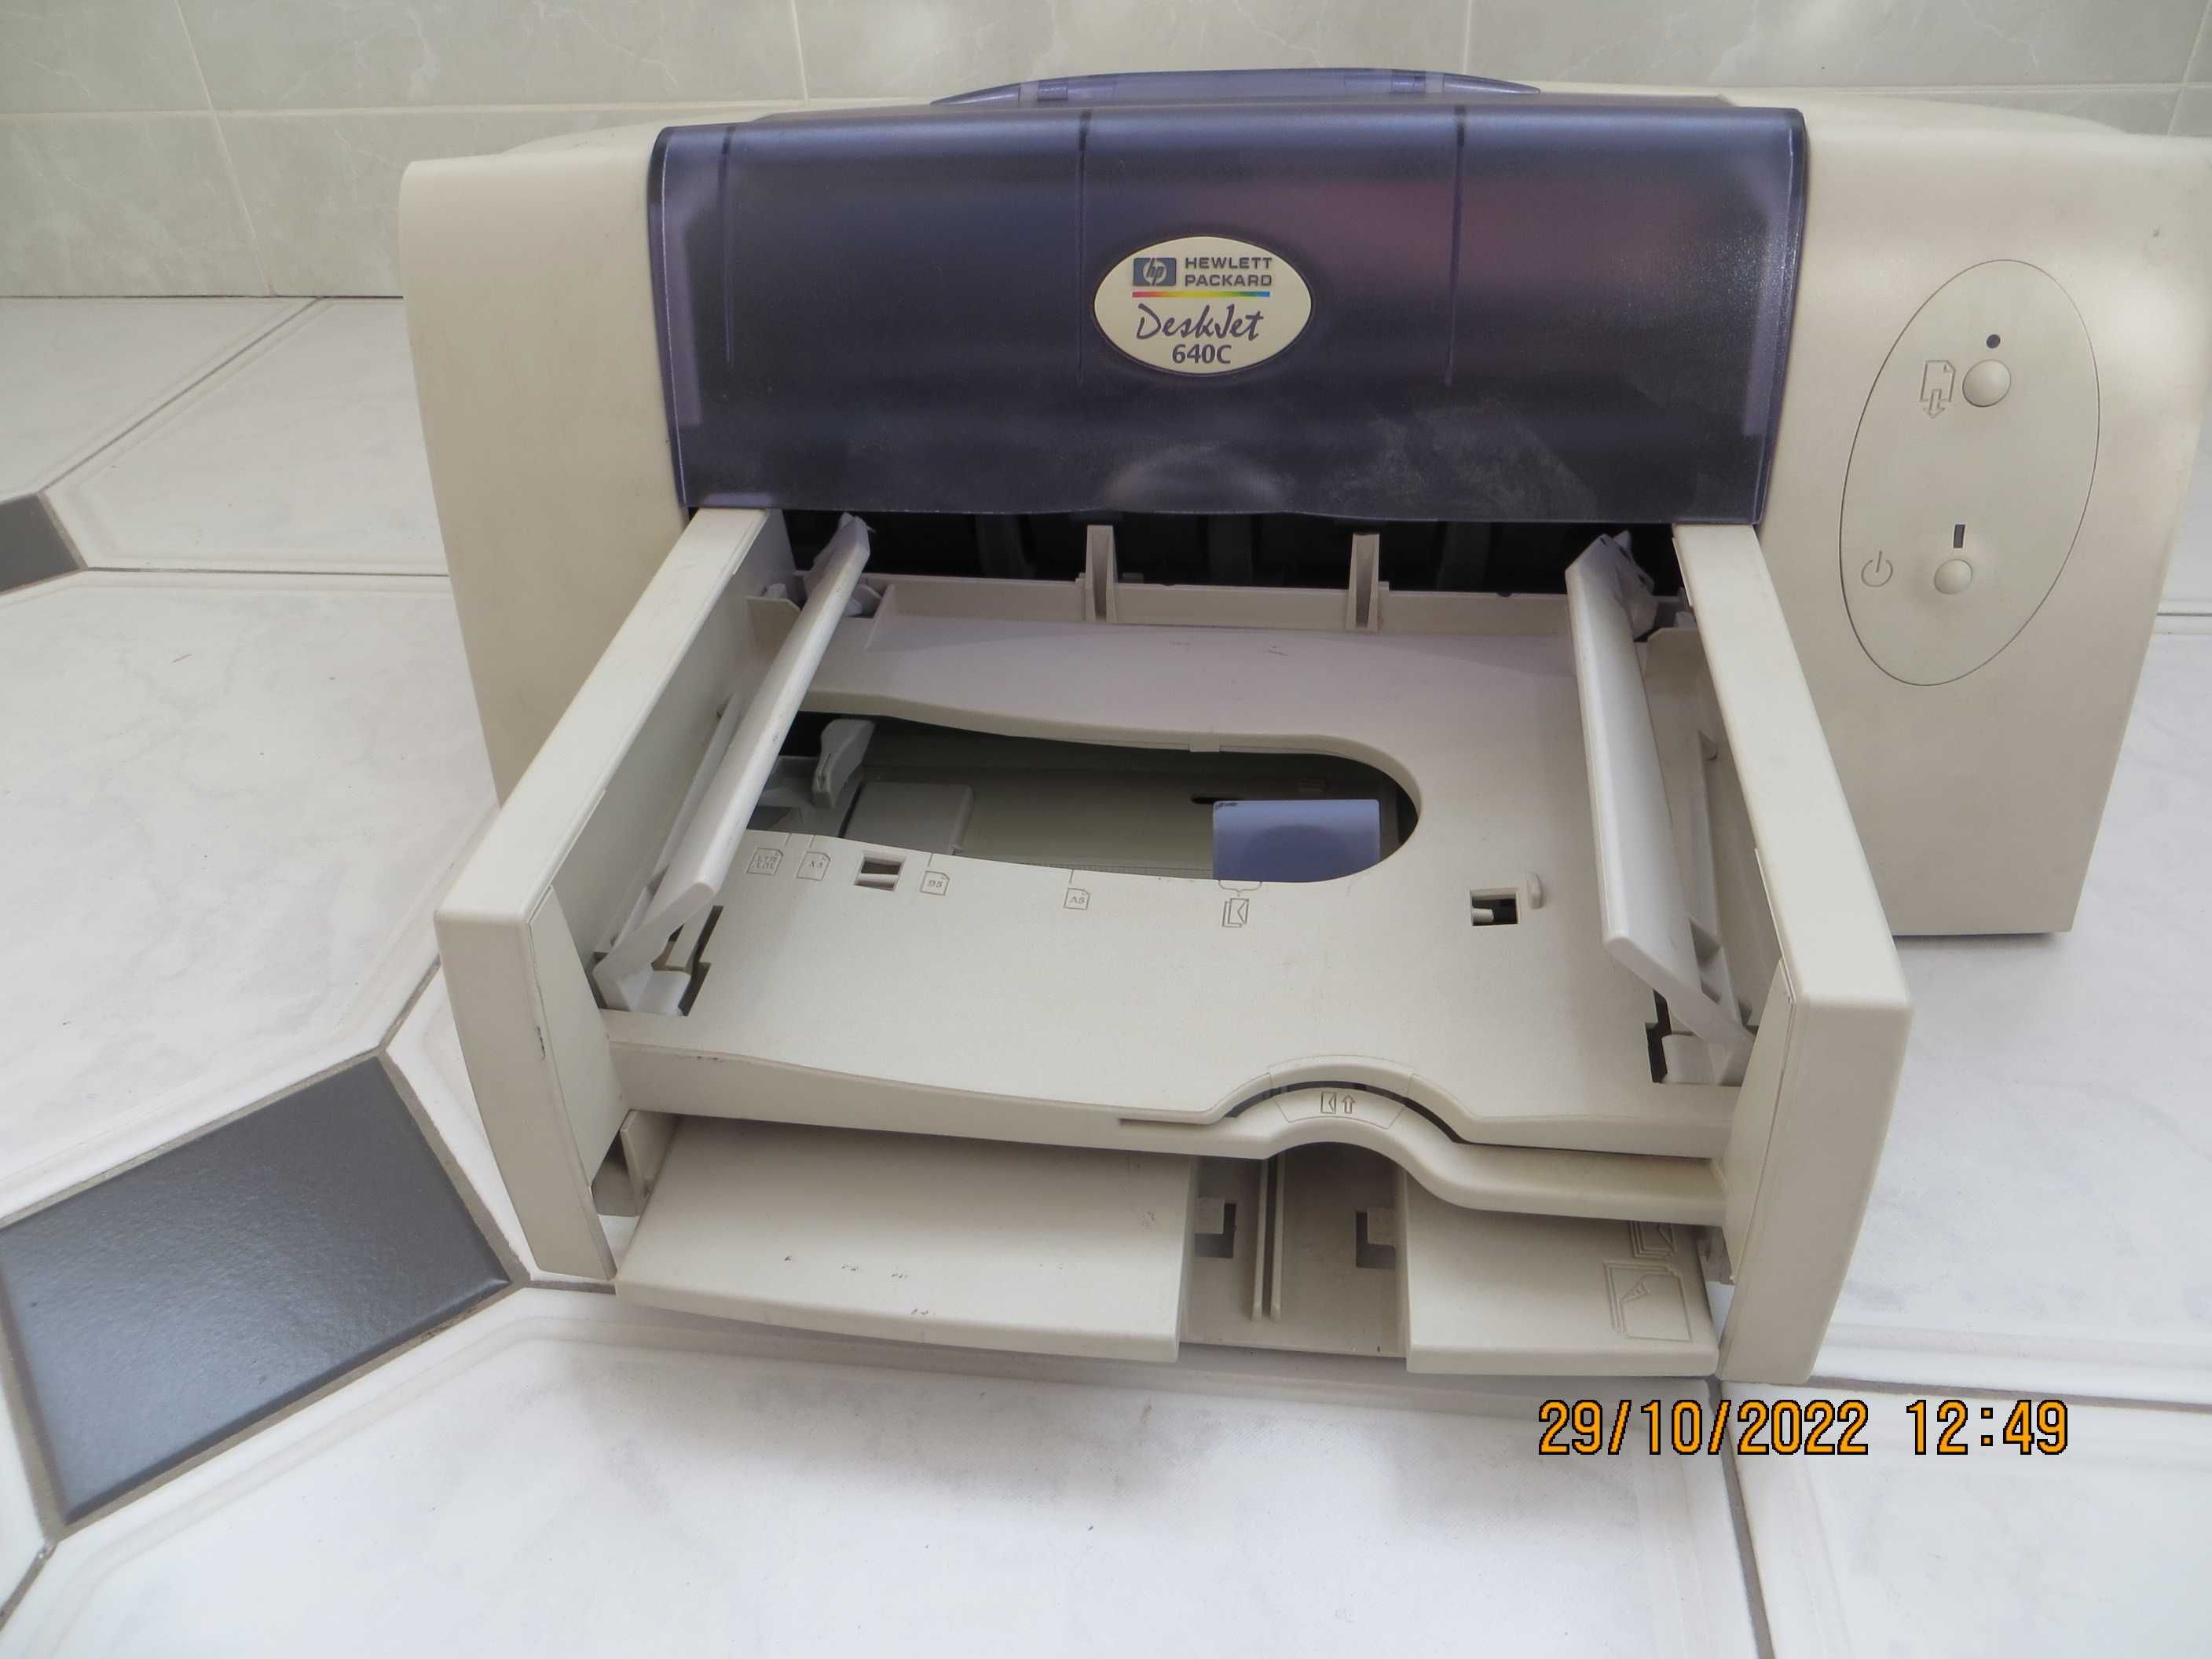 Принтер струйный HEWLETT PACKARD  Deskvet 640 C.  Цена договорная.